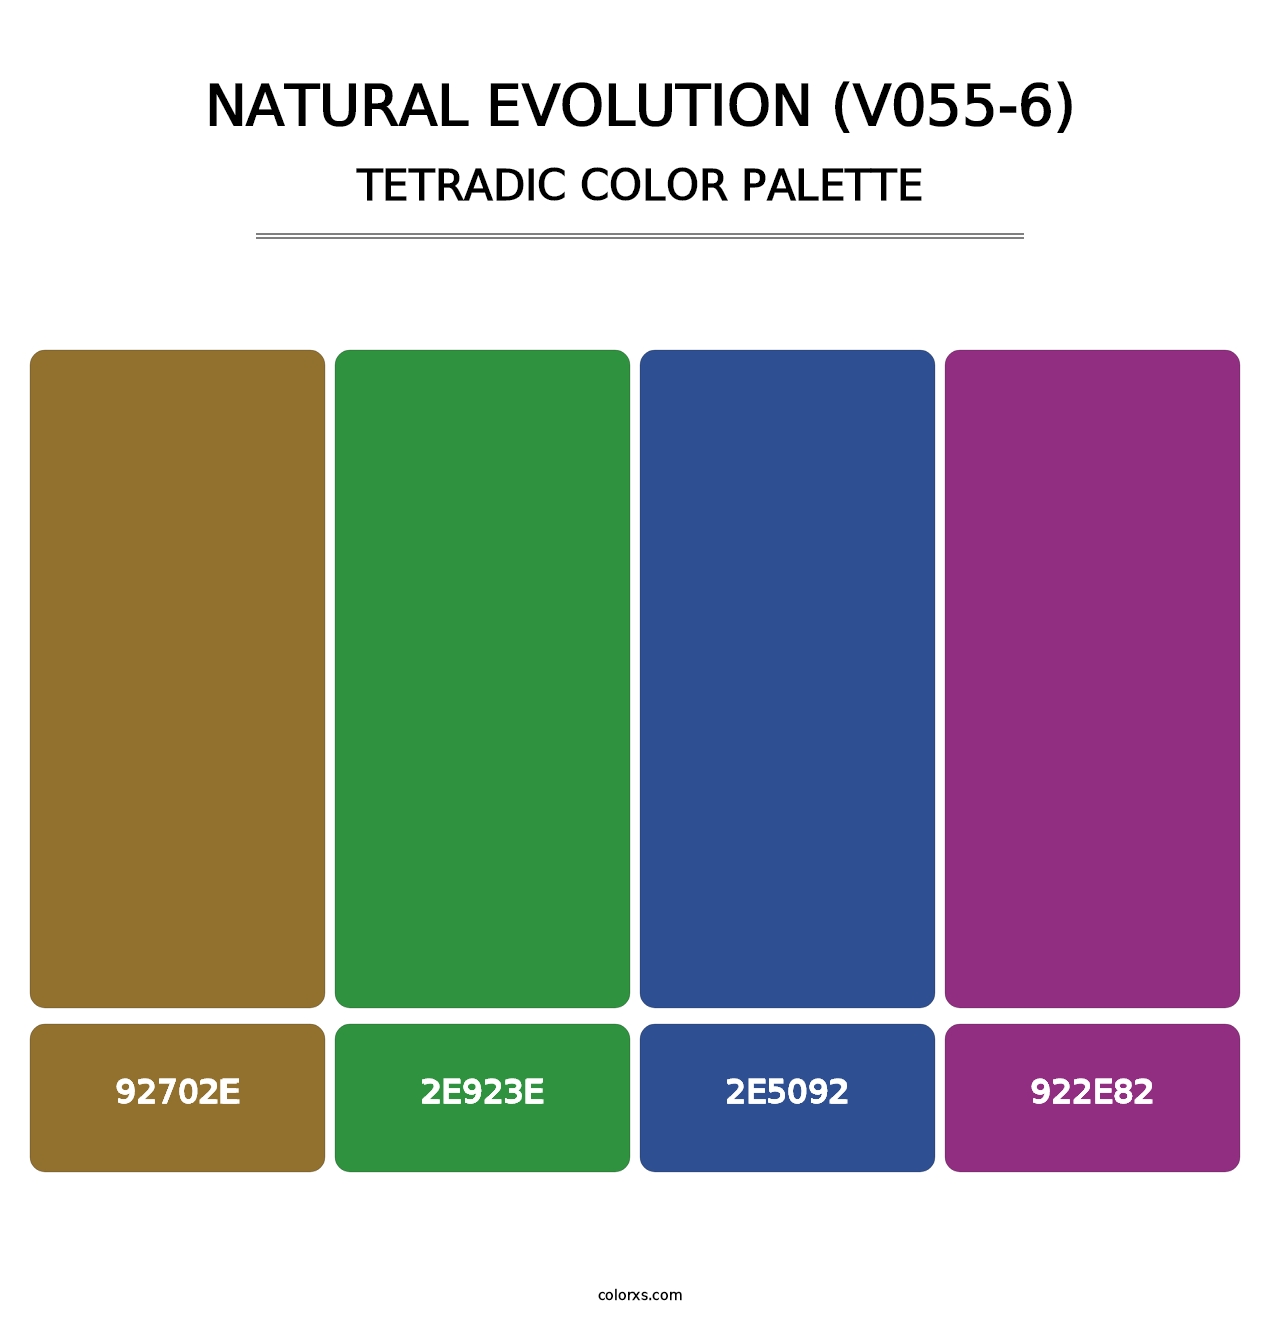 Natural Evolution (V055-6) - Tetradic Color Palette